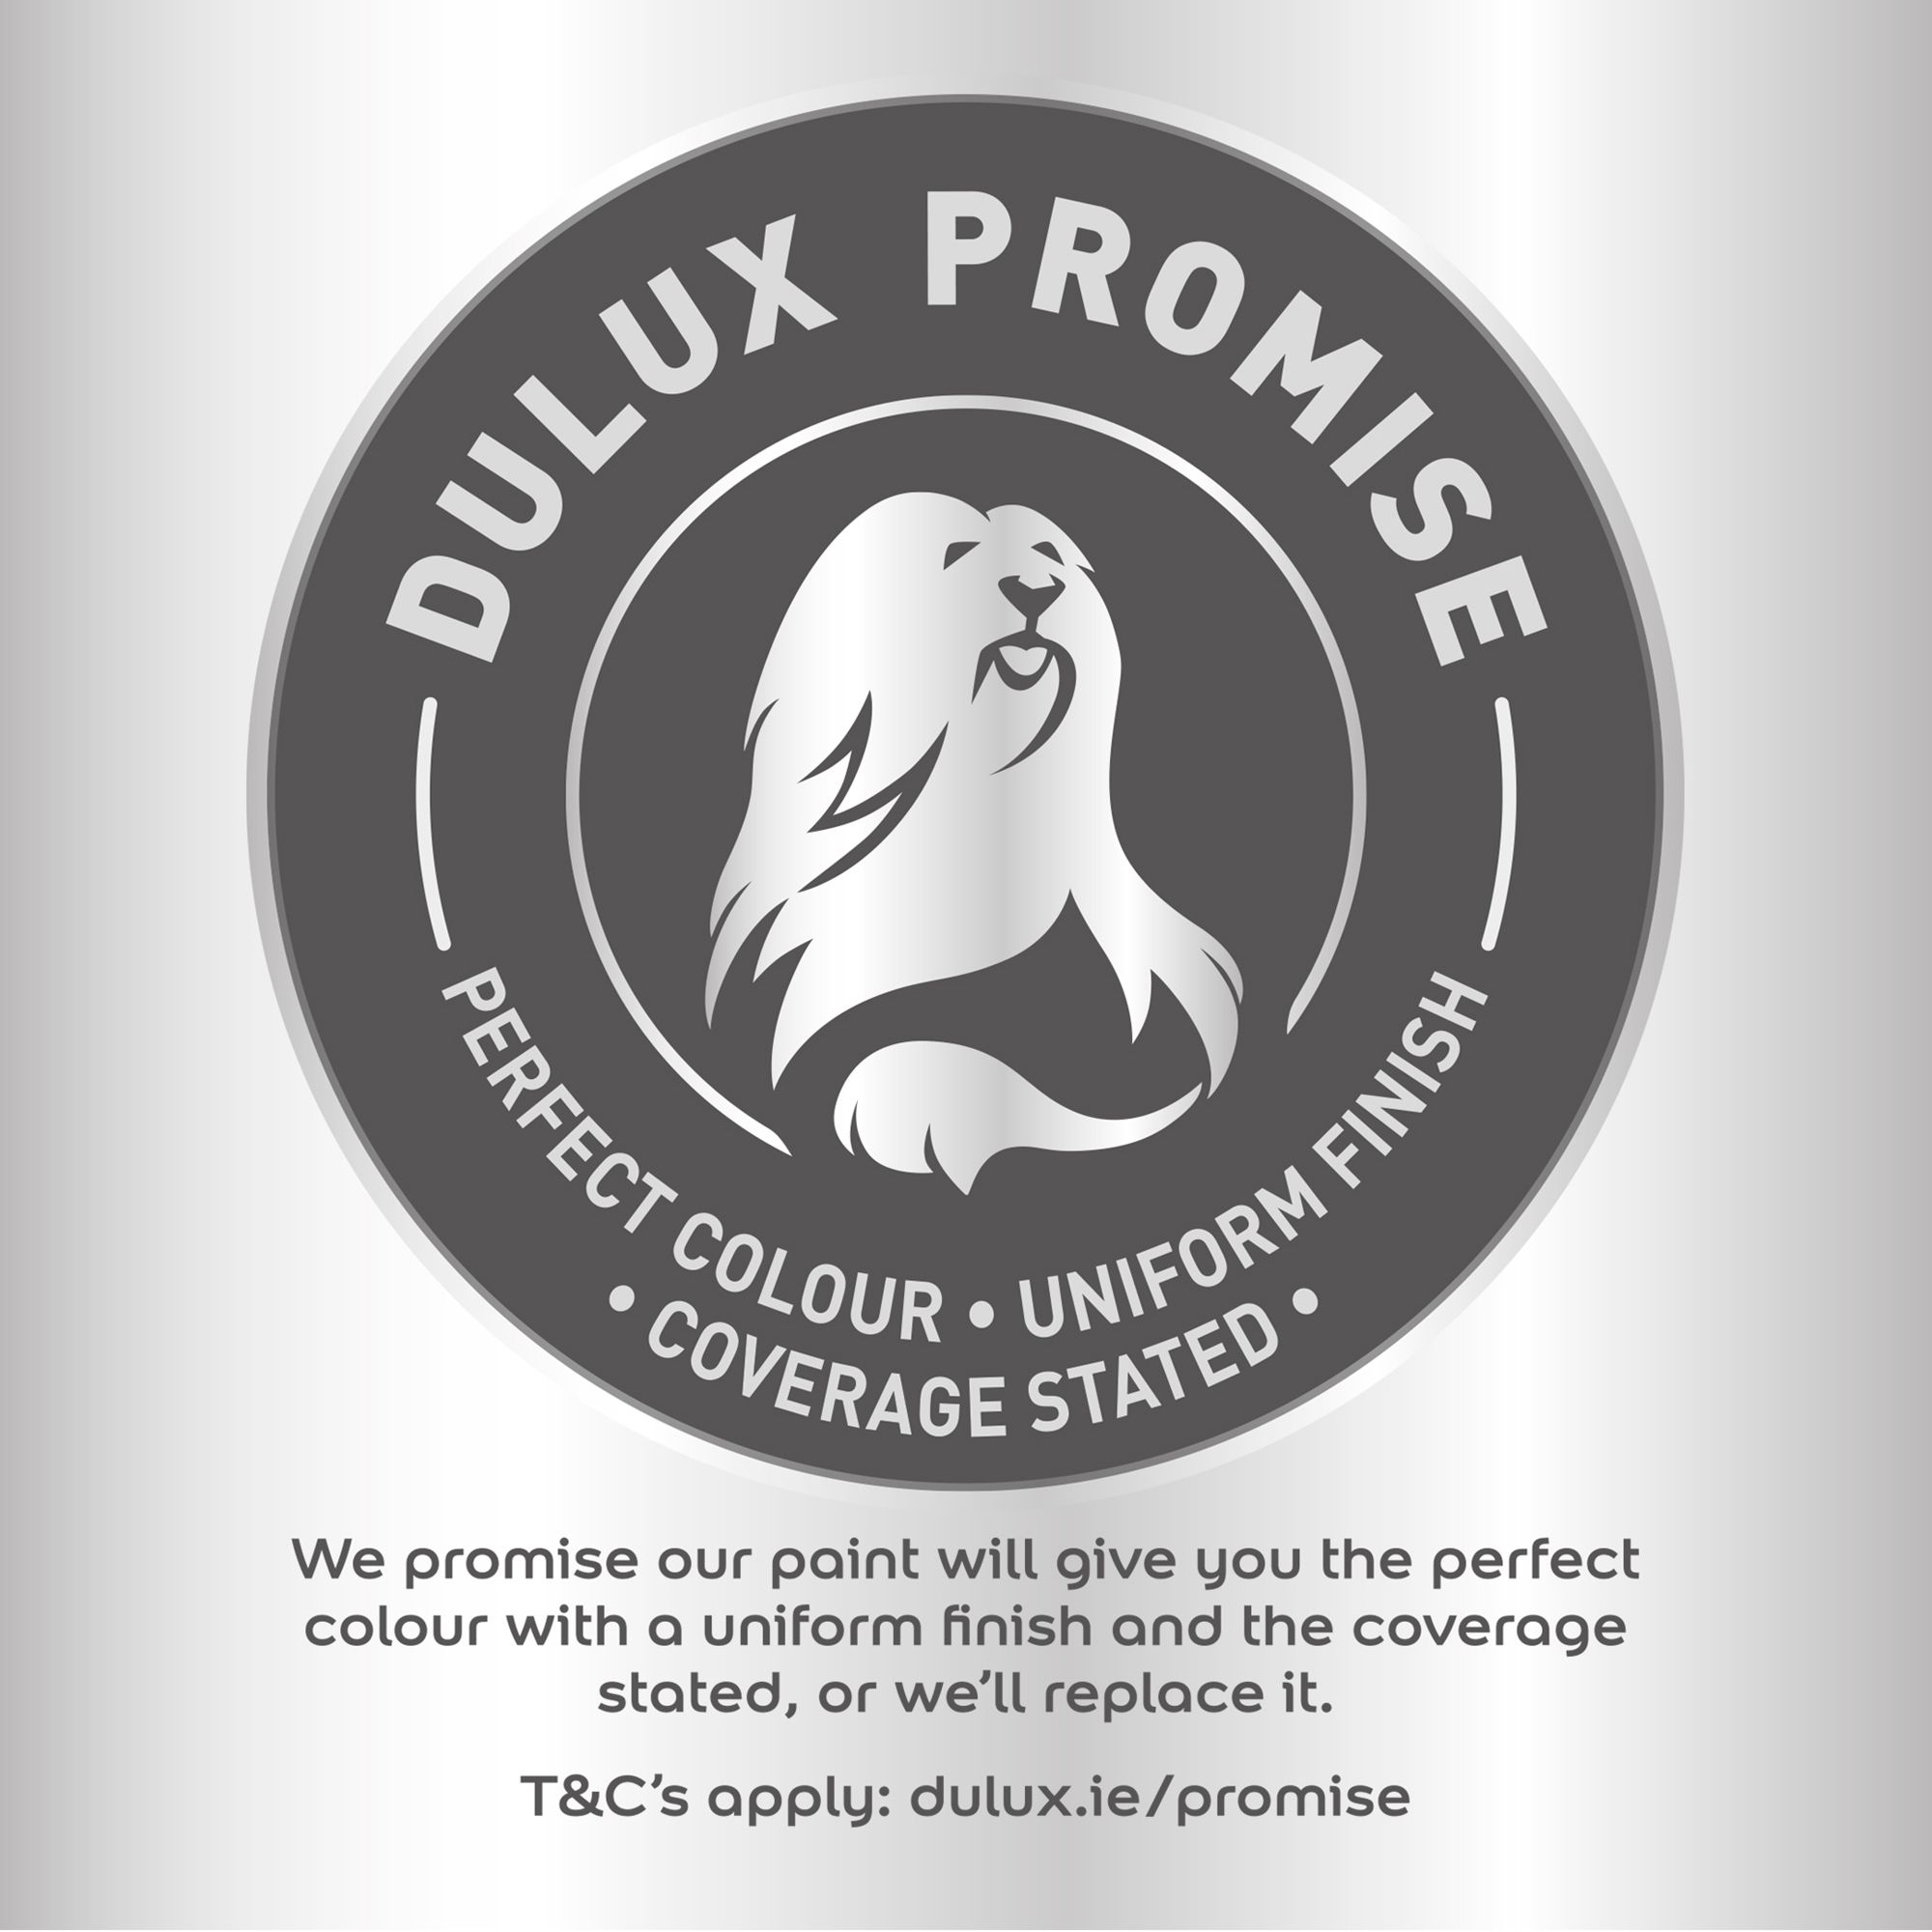 Dulux Warm cream Soft sheen Emulsion paint, 2.5L